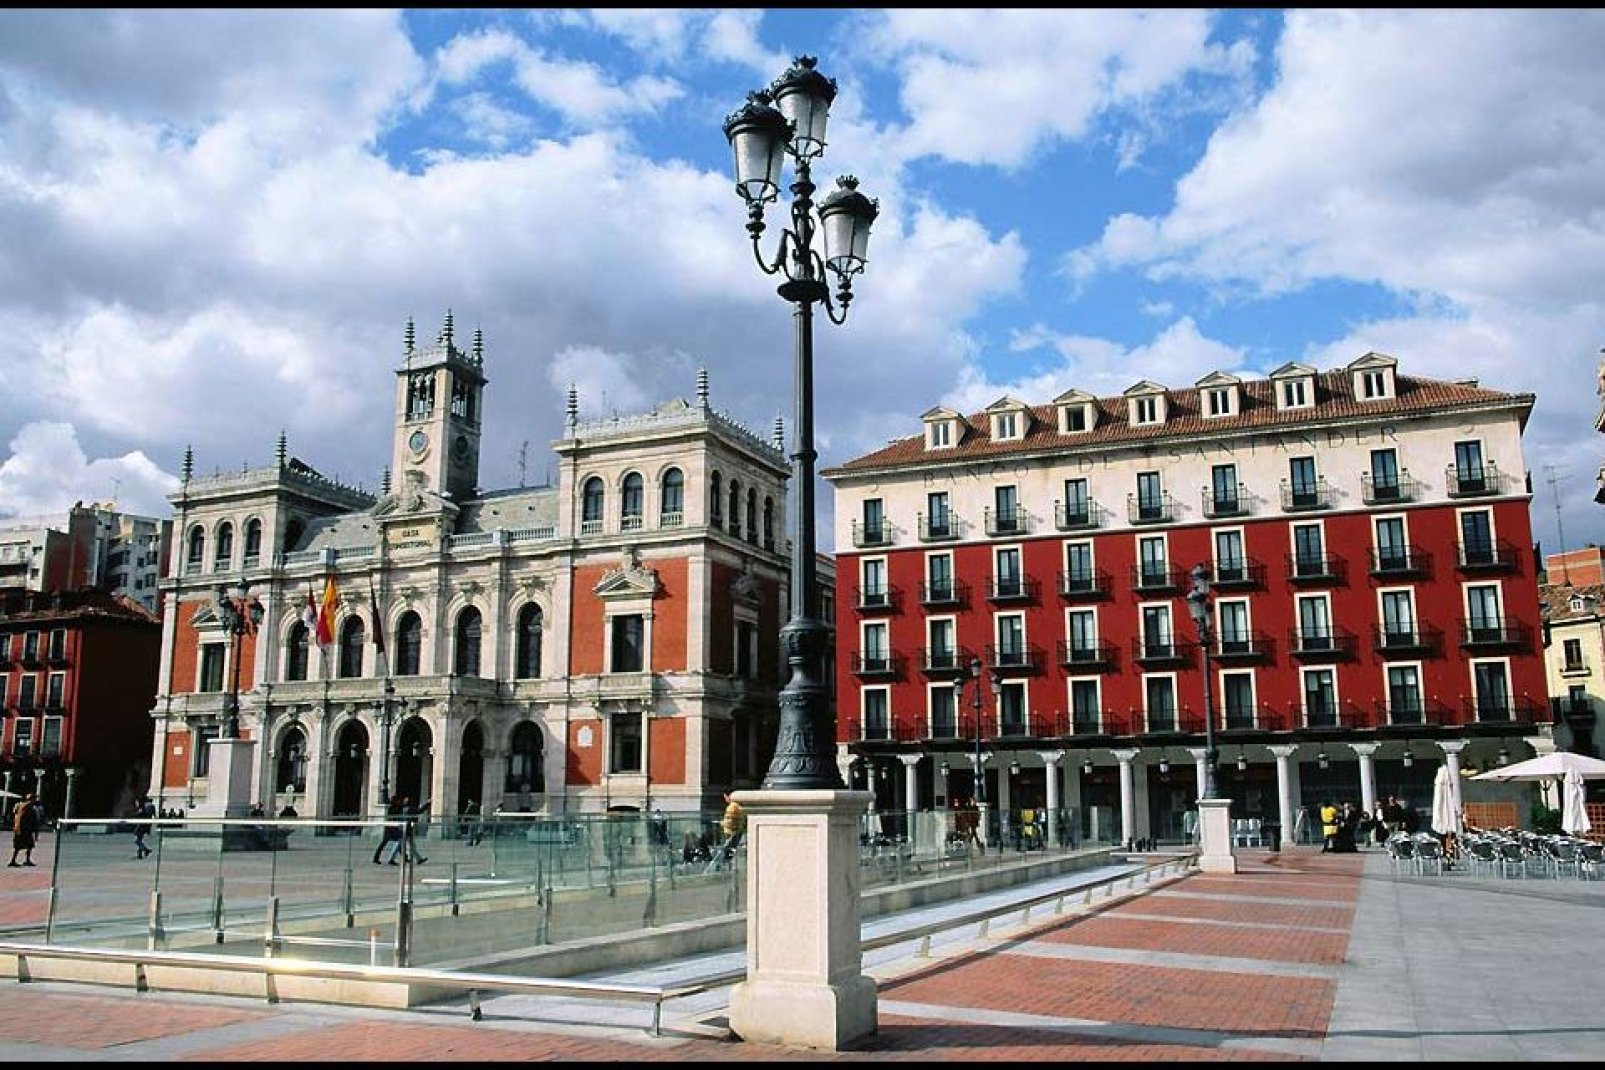 El ayuntamiento está en pleno centro de la ciudad.